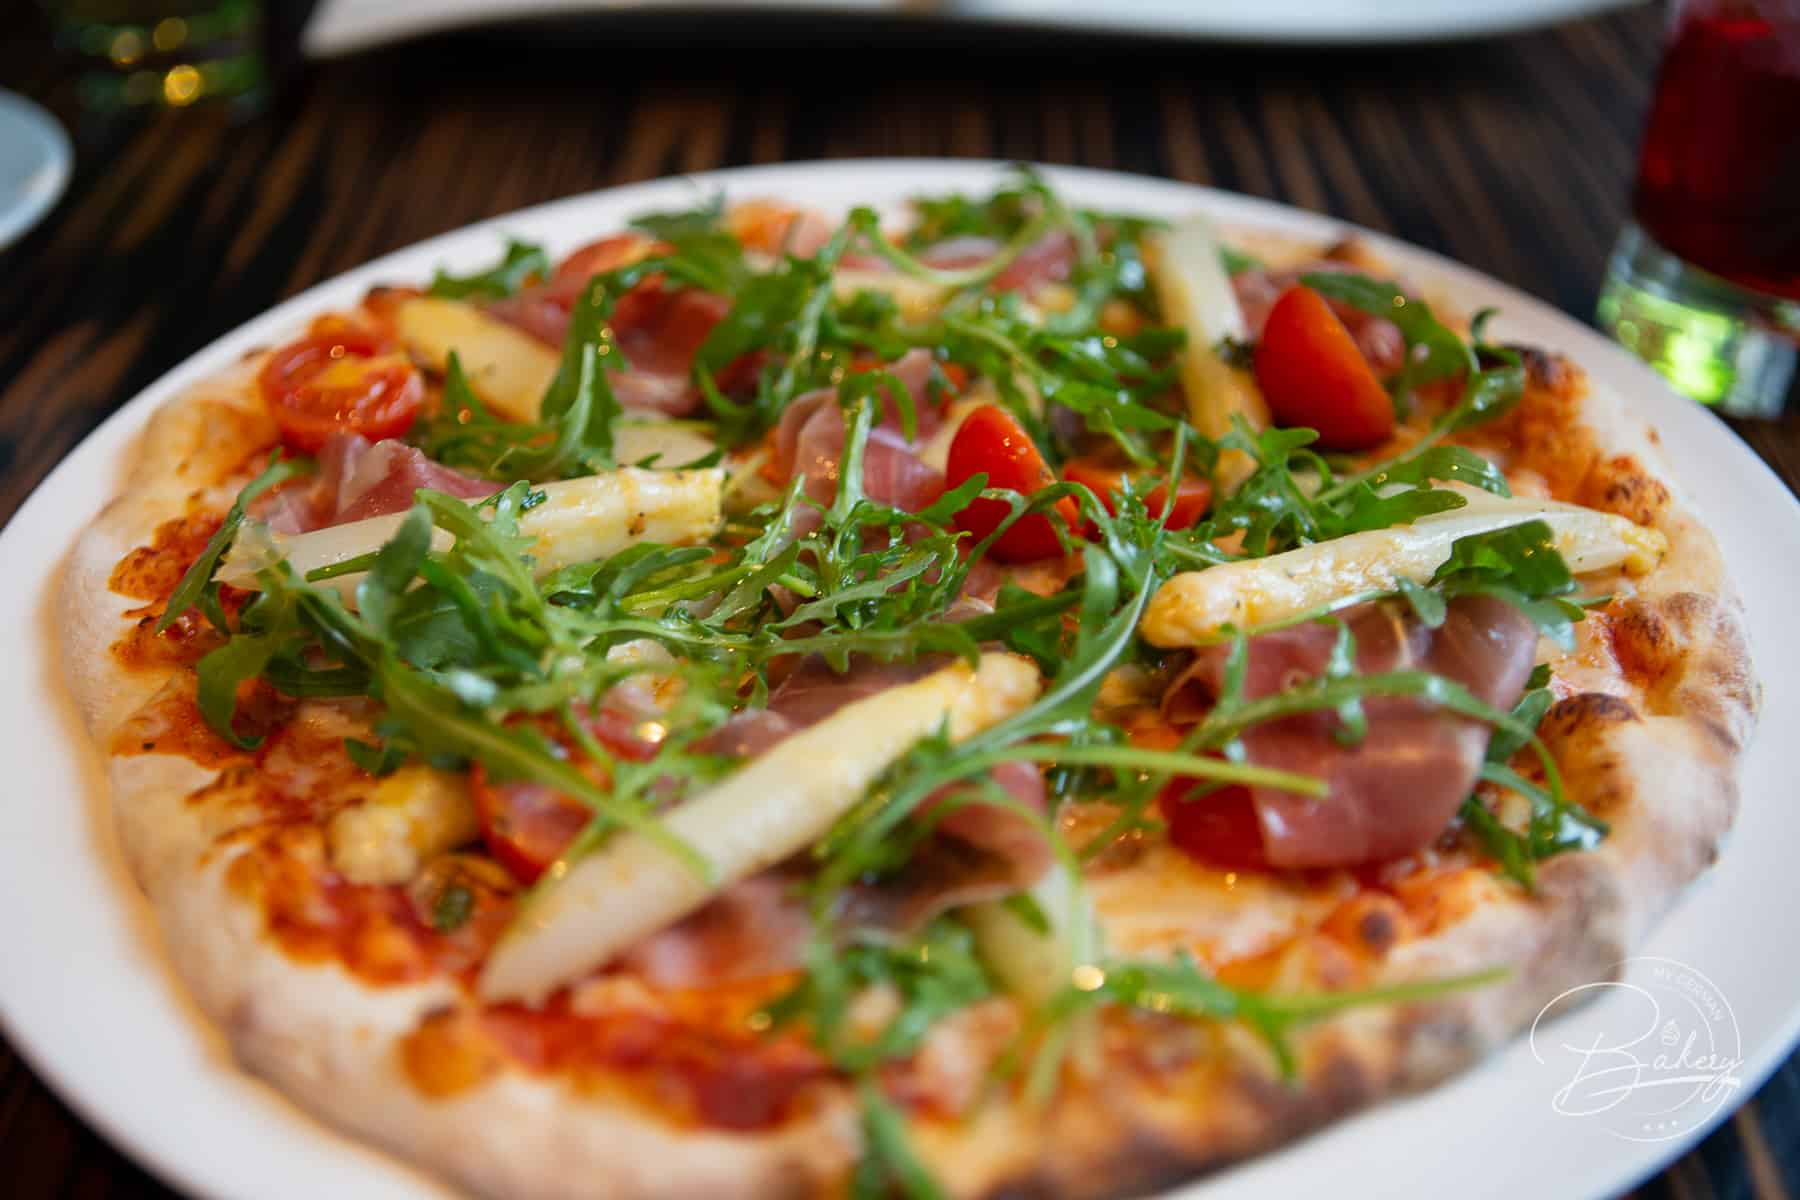 Pizzateig Grundrezept - bester Pizzateig selber machen - Pizza backen - Pizzateig selber machen - einfaches Rezept für Pizzateig